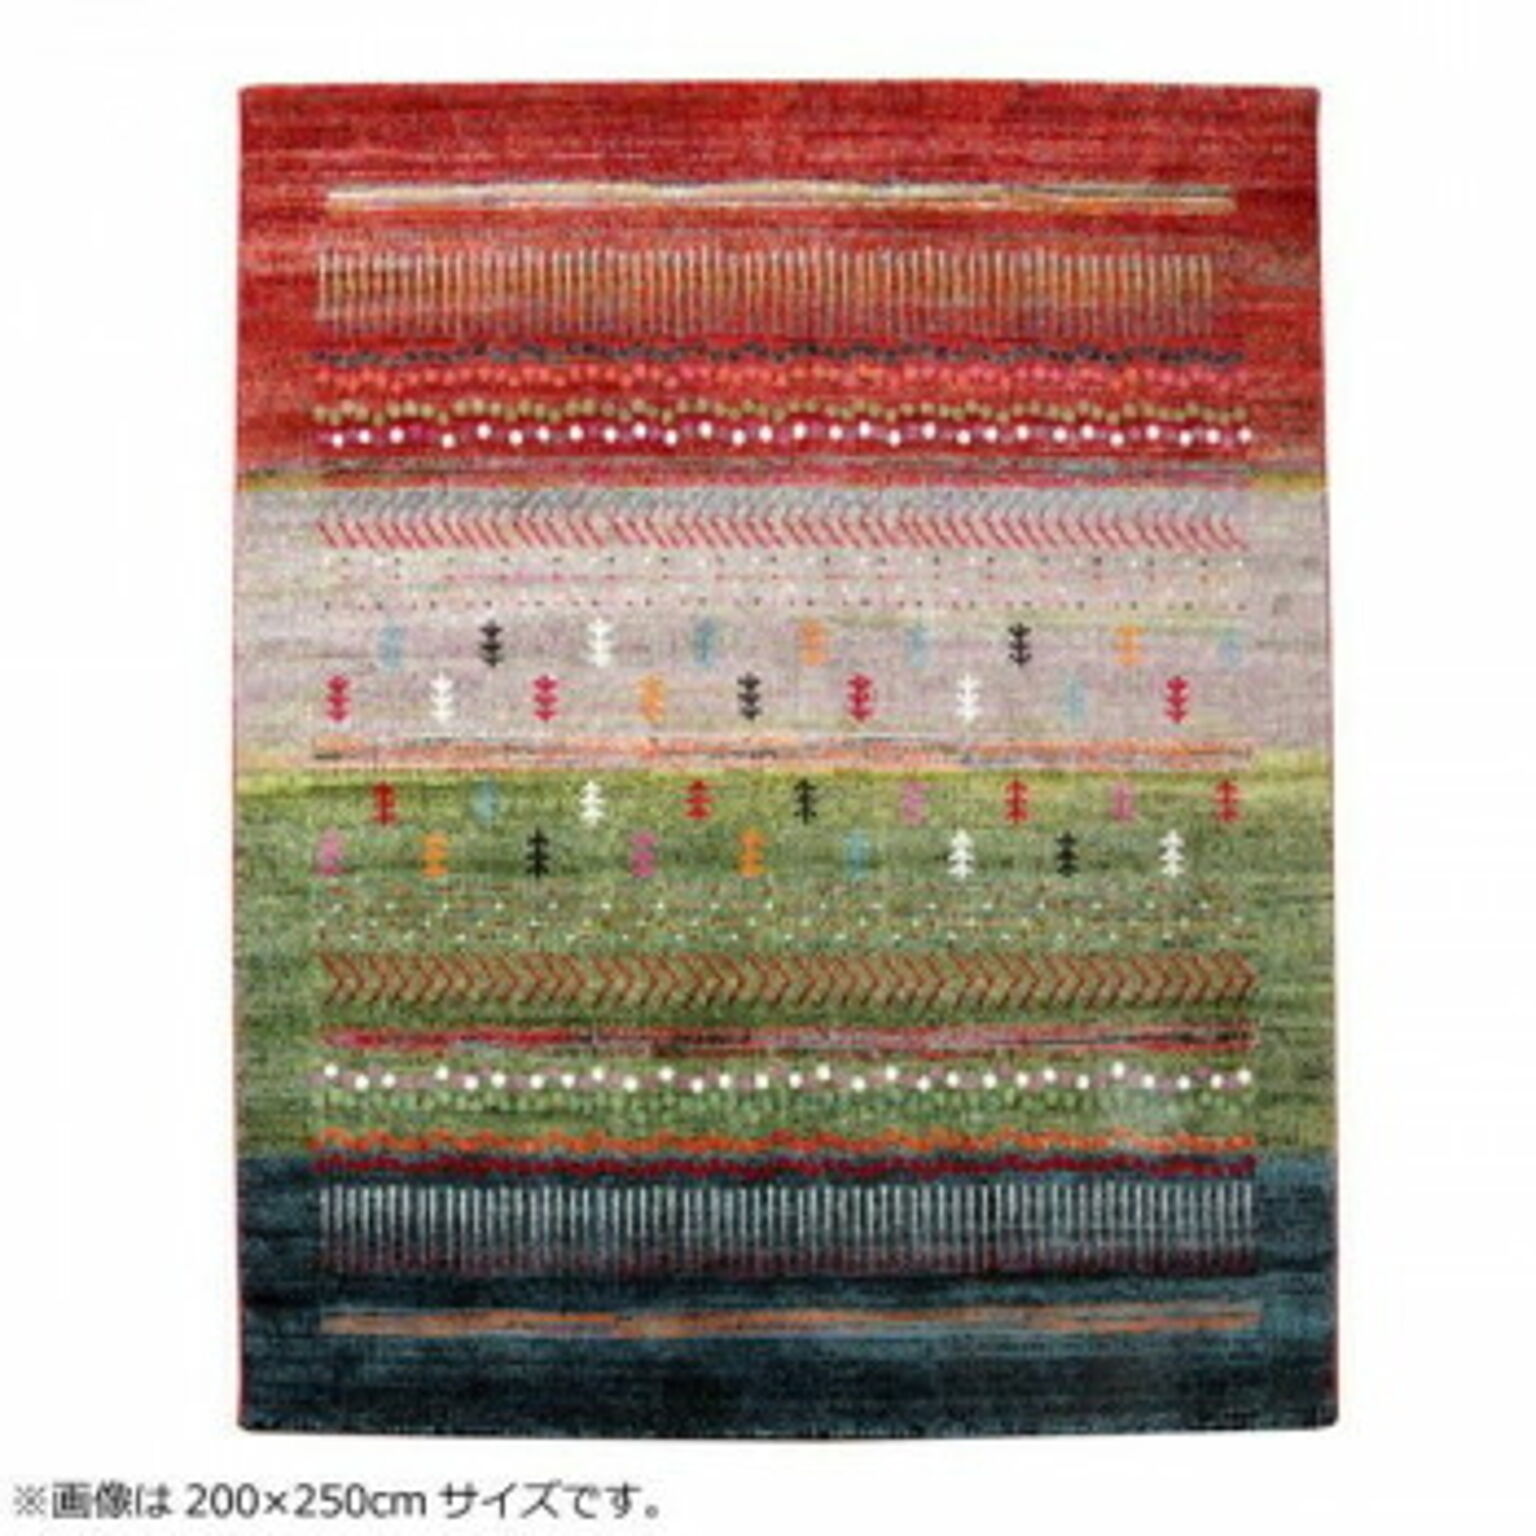 トルコ製 ウィルトン織カーペット 『マリア RUG』 グリーン 約133×190cm 2334669